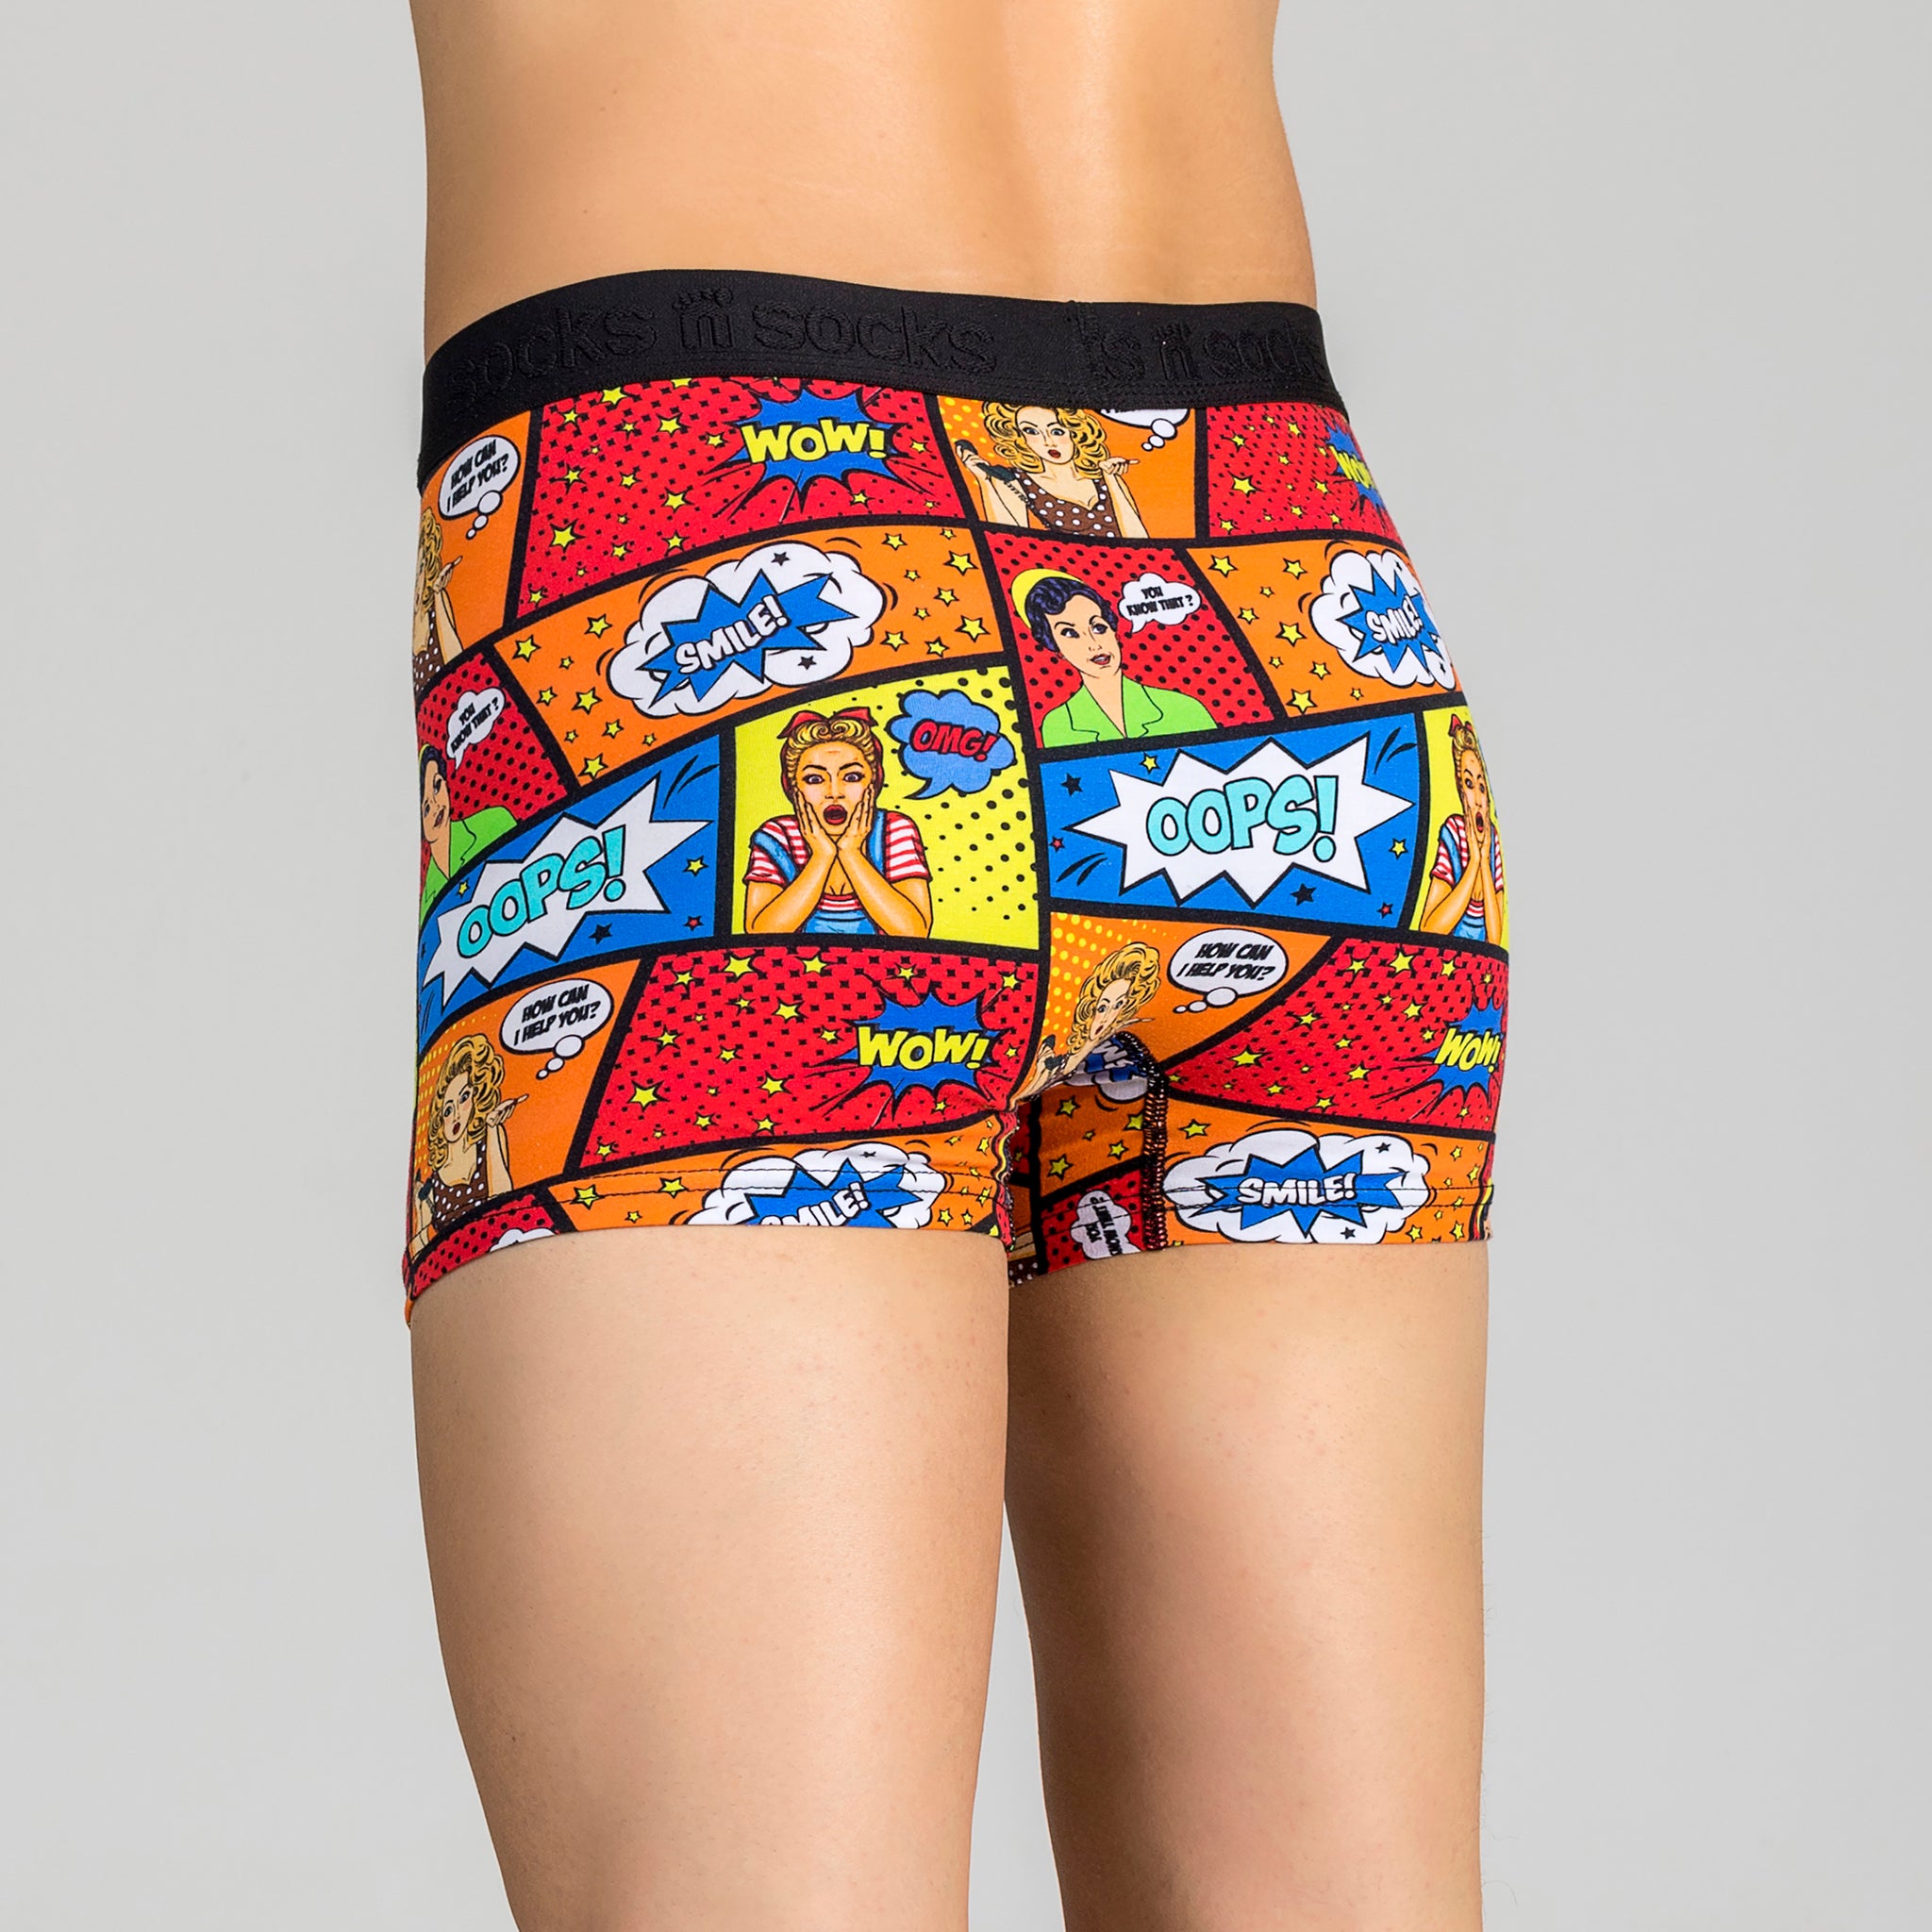 PopArt Design - Boy Shorts Underwear For Women